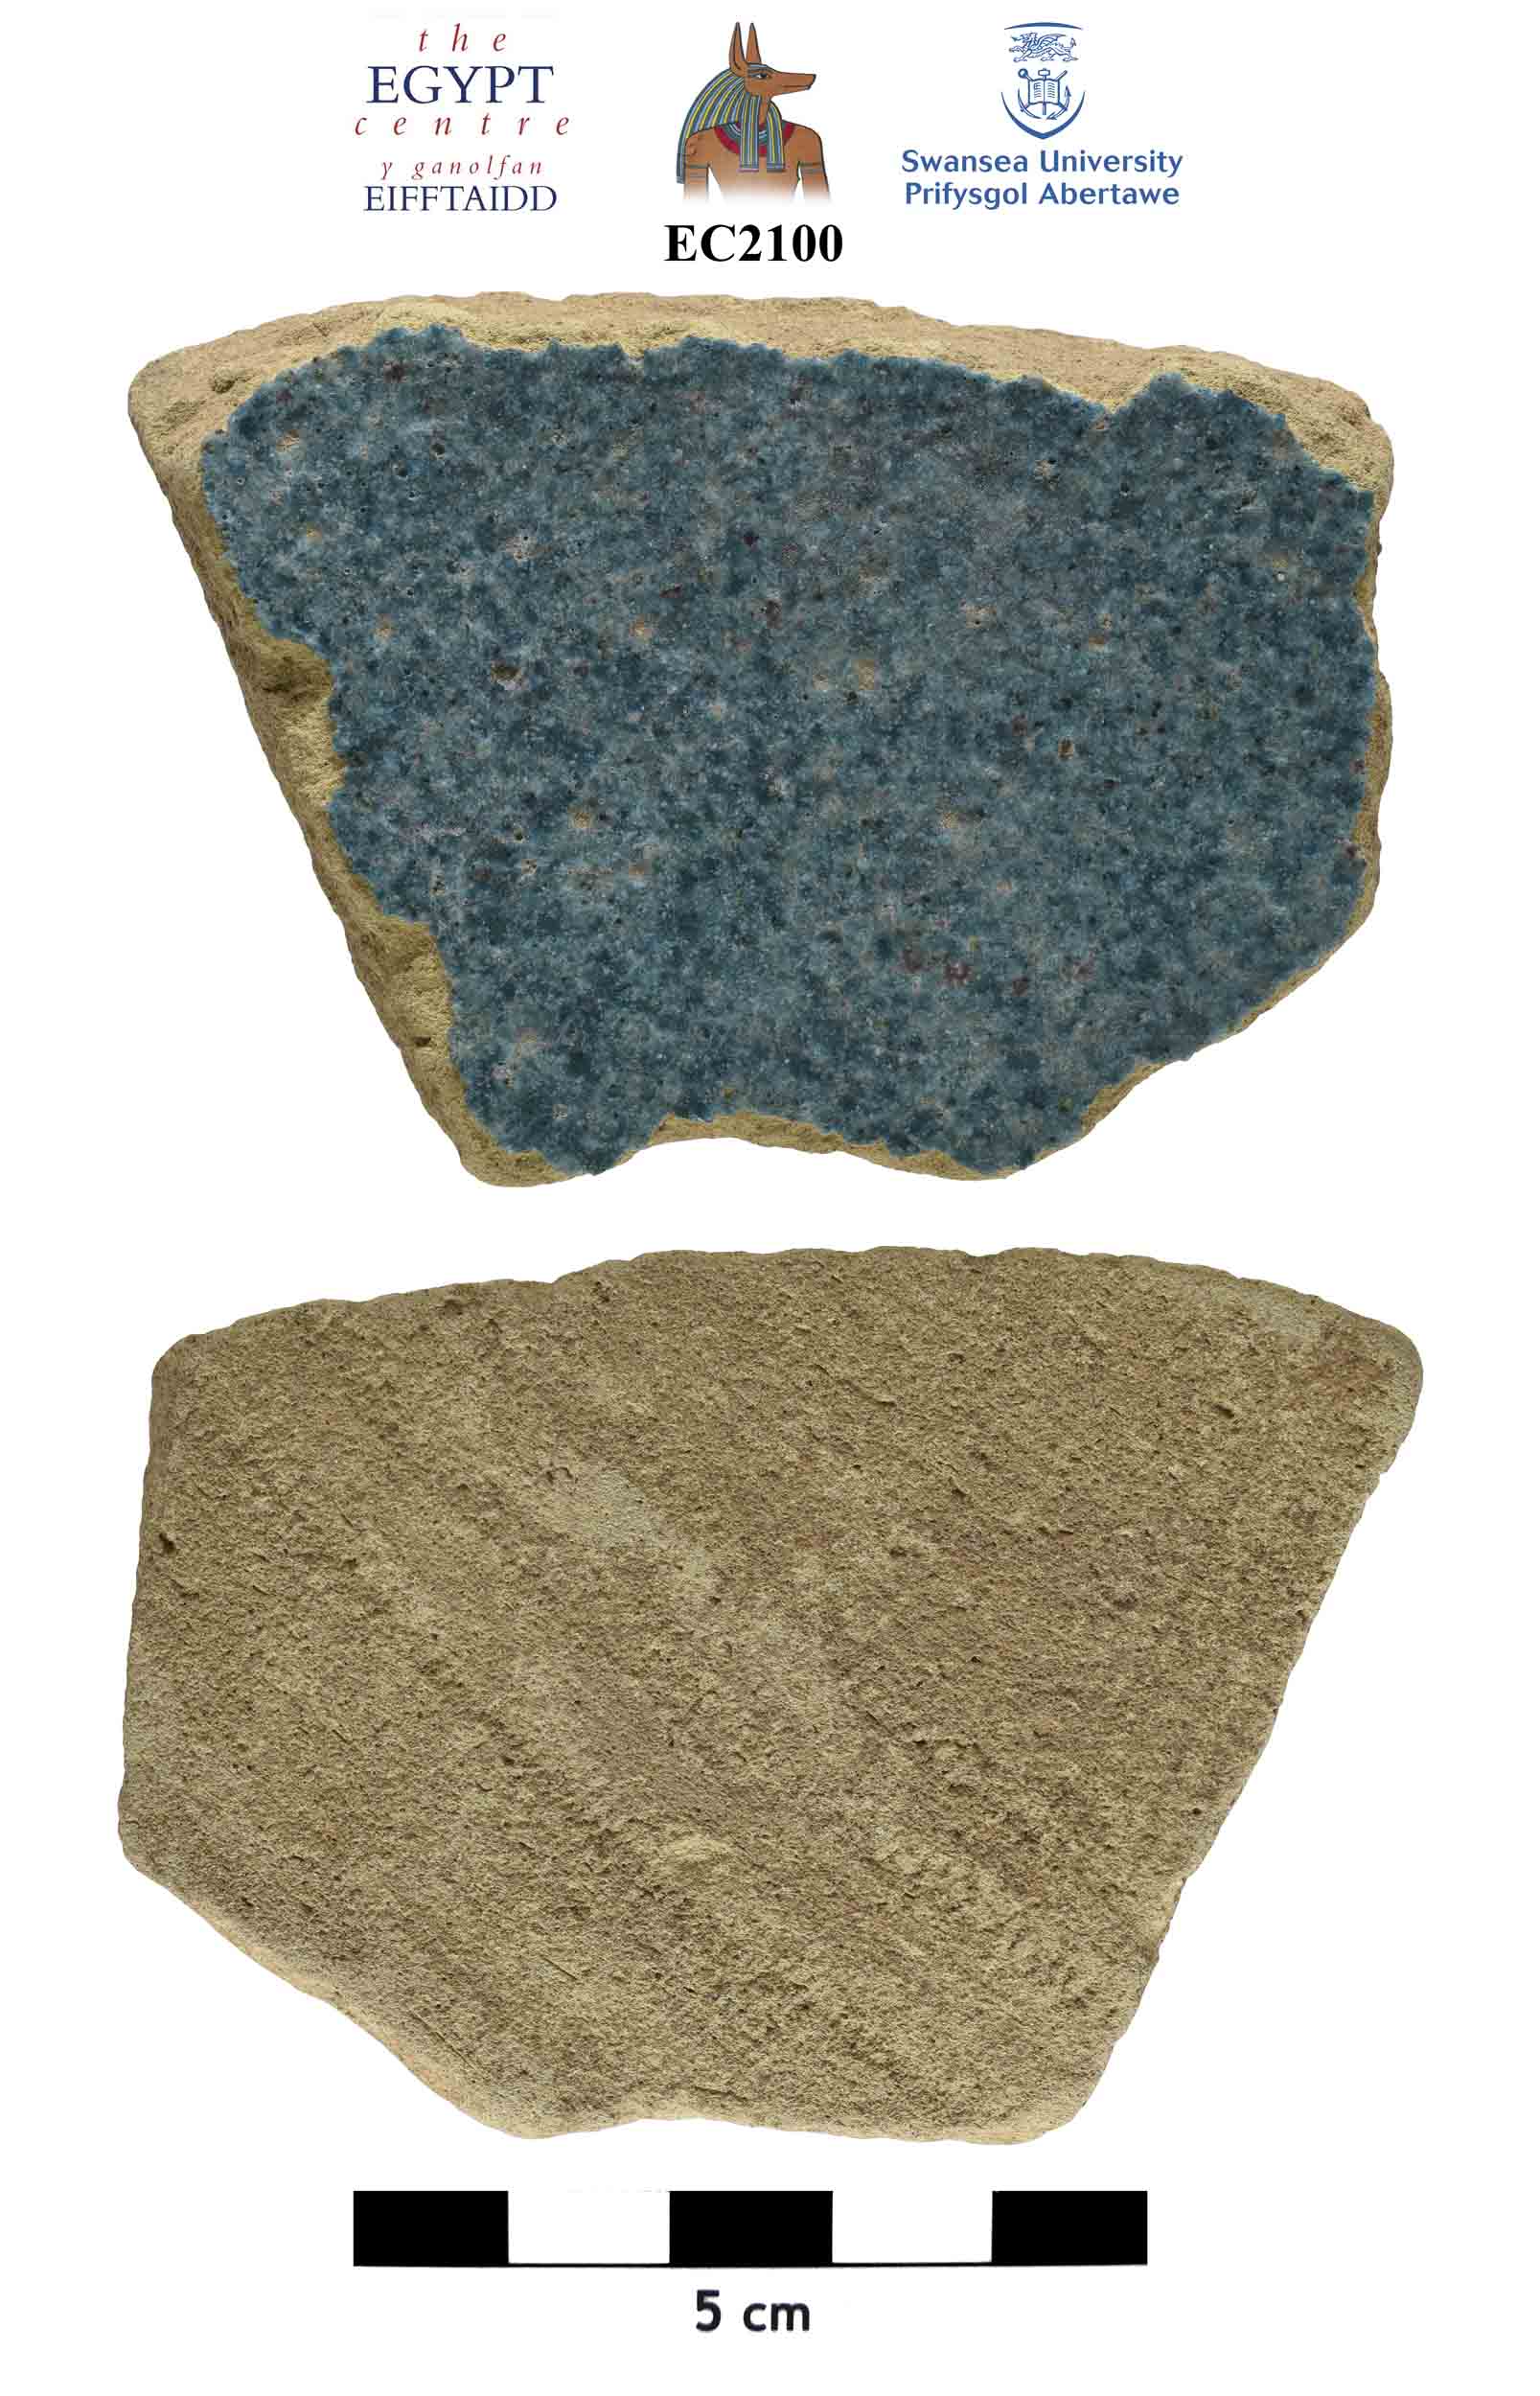 Image for: Glazed ceramic fragment